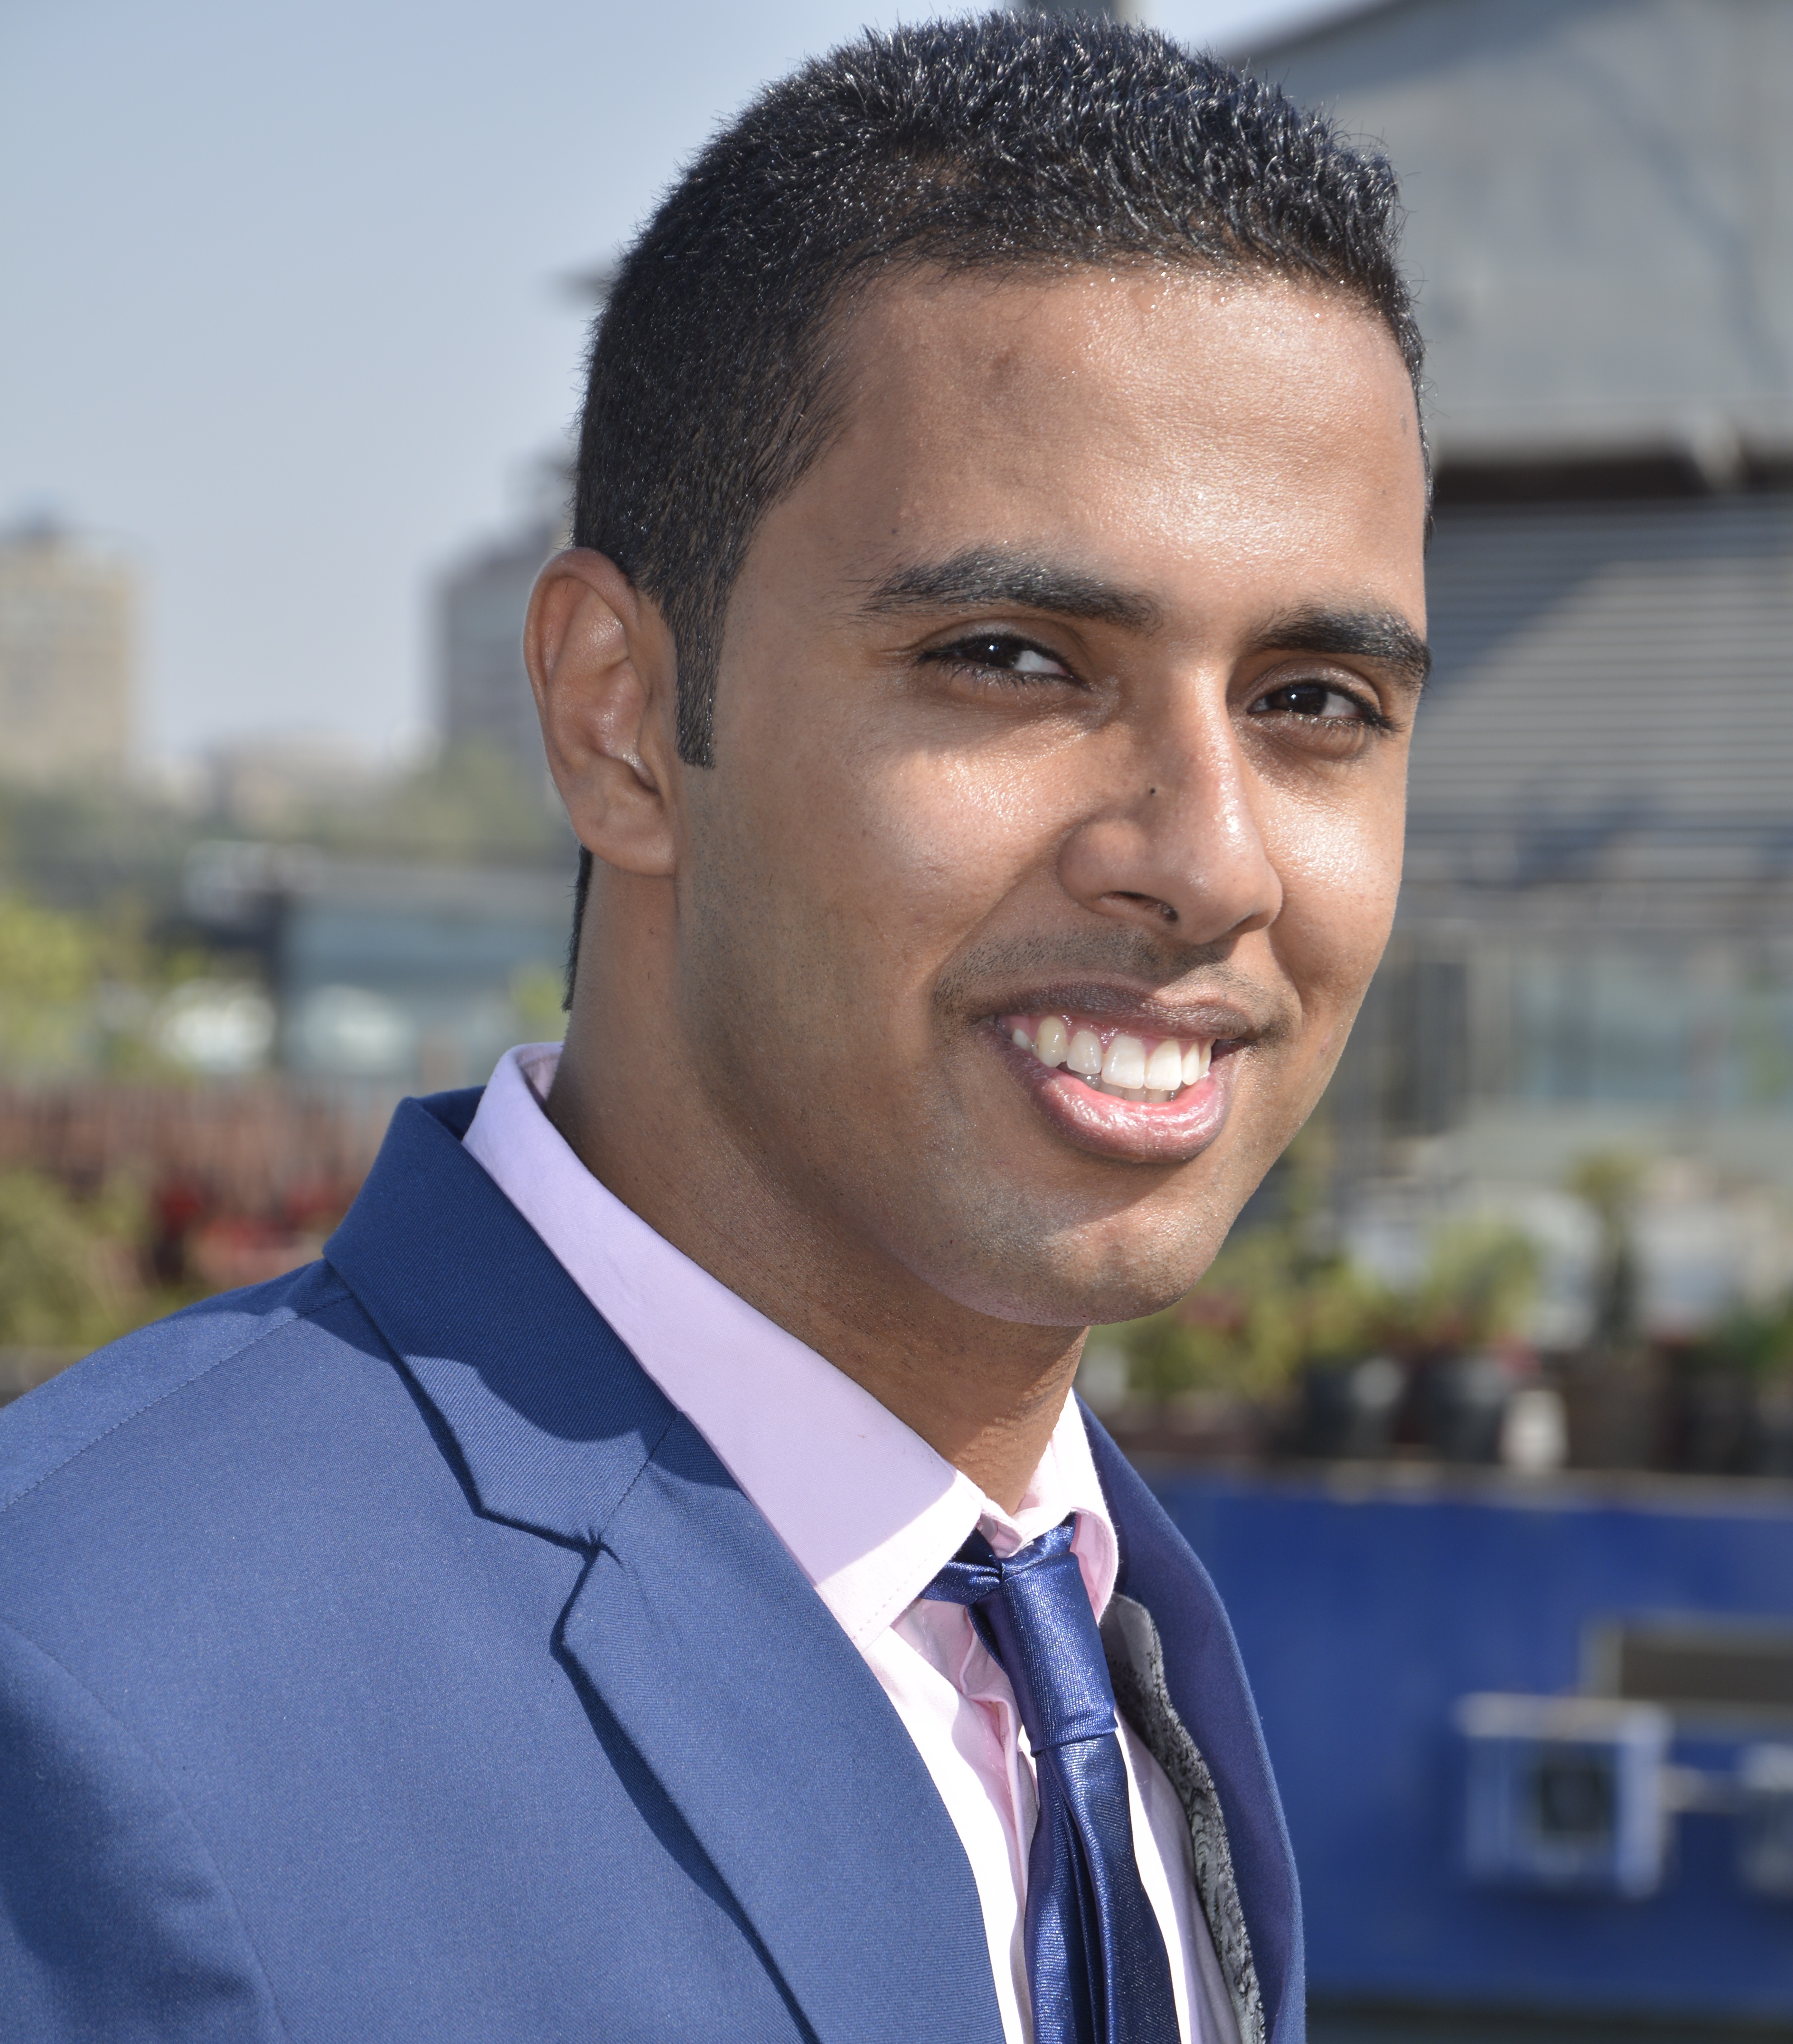 محمد أيمن ـ طالب بالفرقة الرابعة